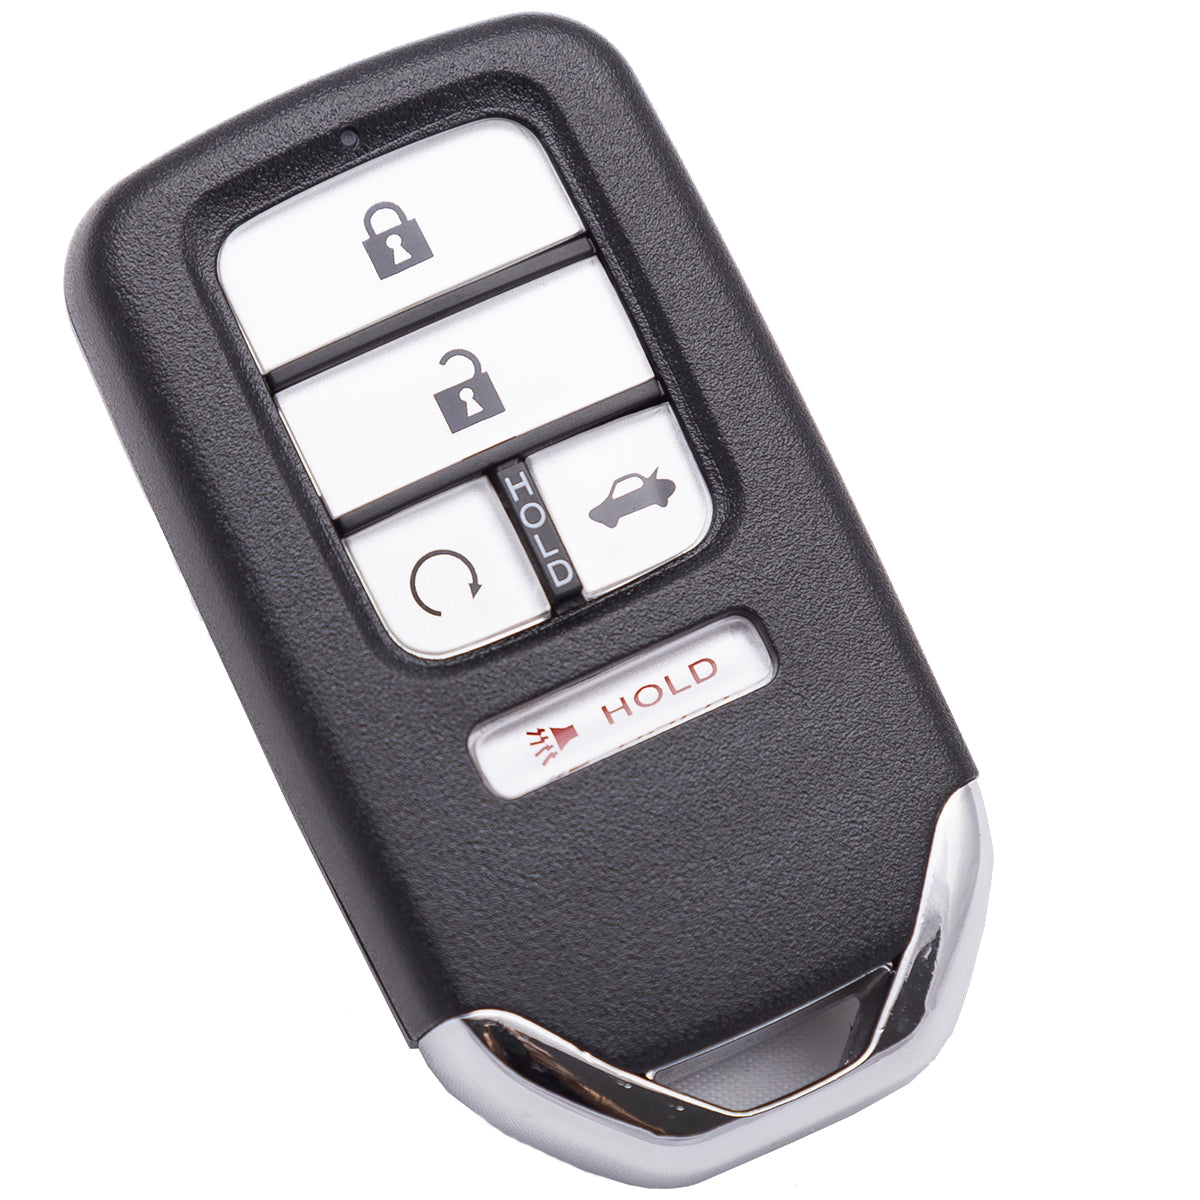 2019 Honda Civic Sedan EX/ Tour Smart Key 5 Buttons FCC# KR5V2X